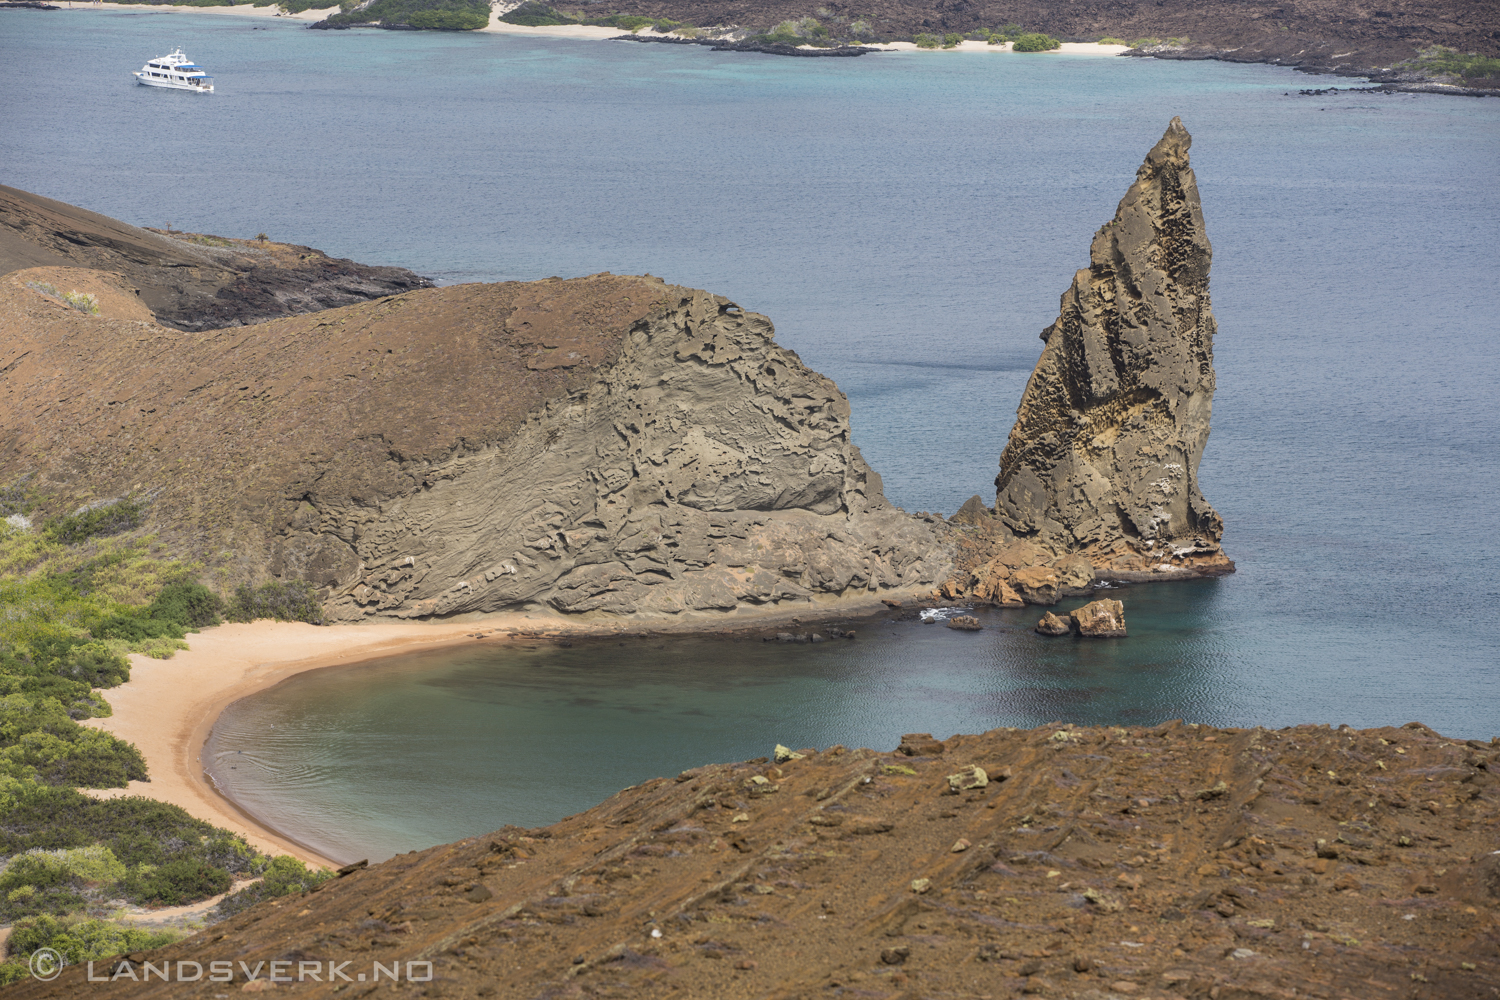 Bartolome Island, Galapagos. 

(Canon EOS 5D Mark III / Canon EF 70-200mm f/2.8 L IS II USM)